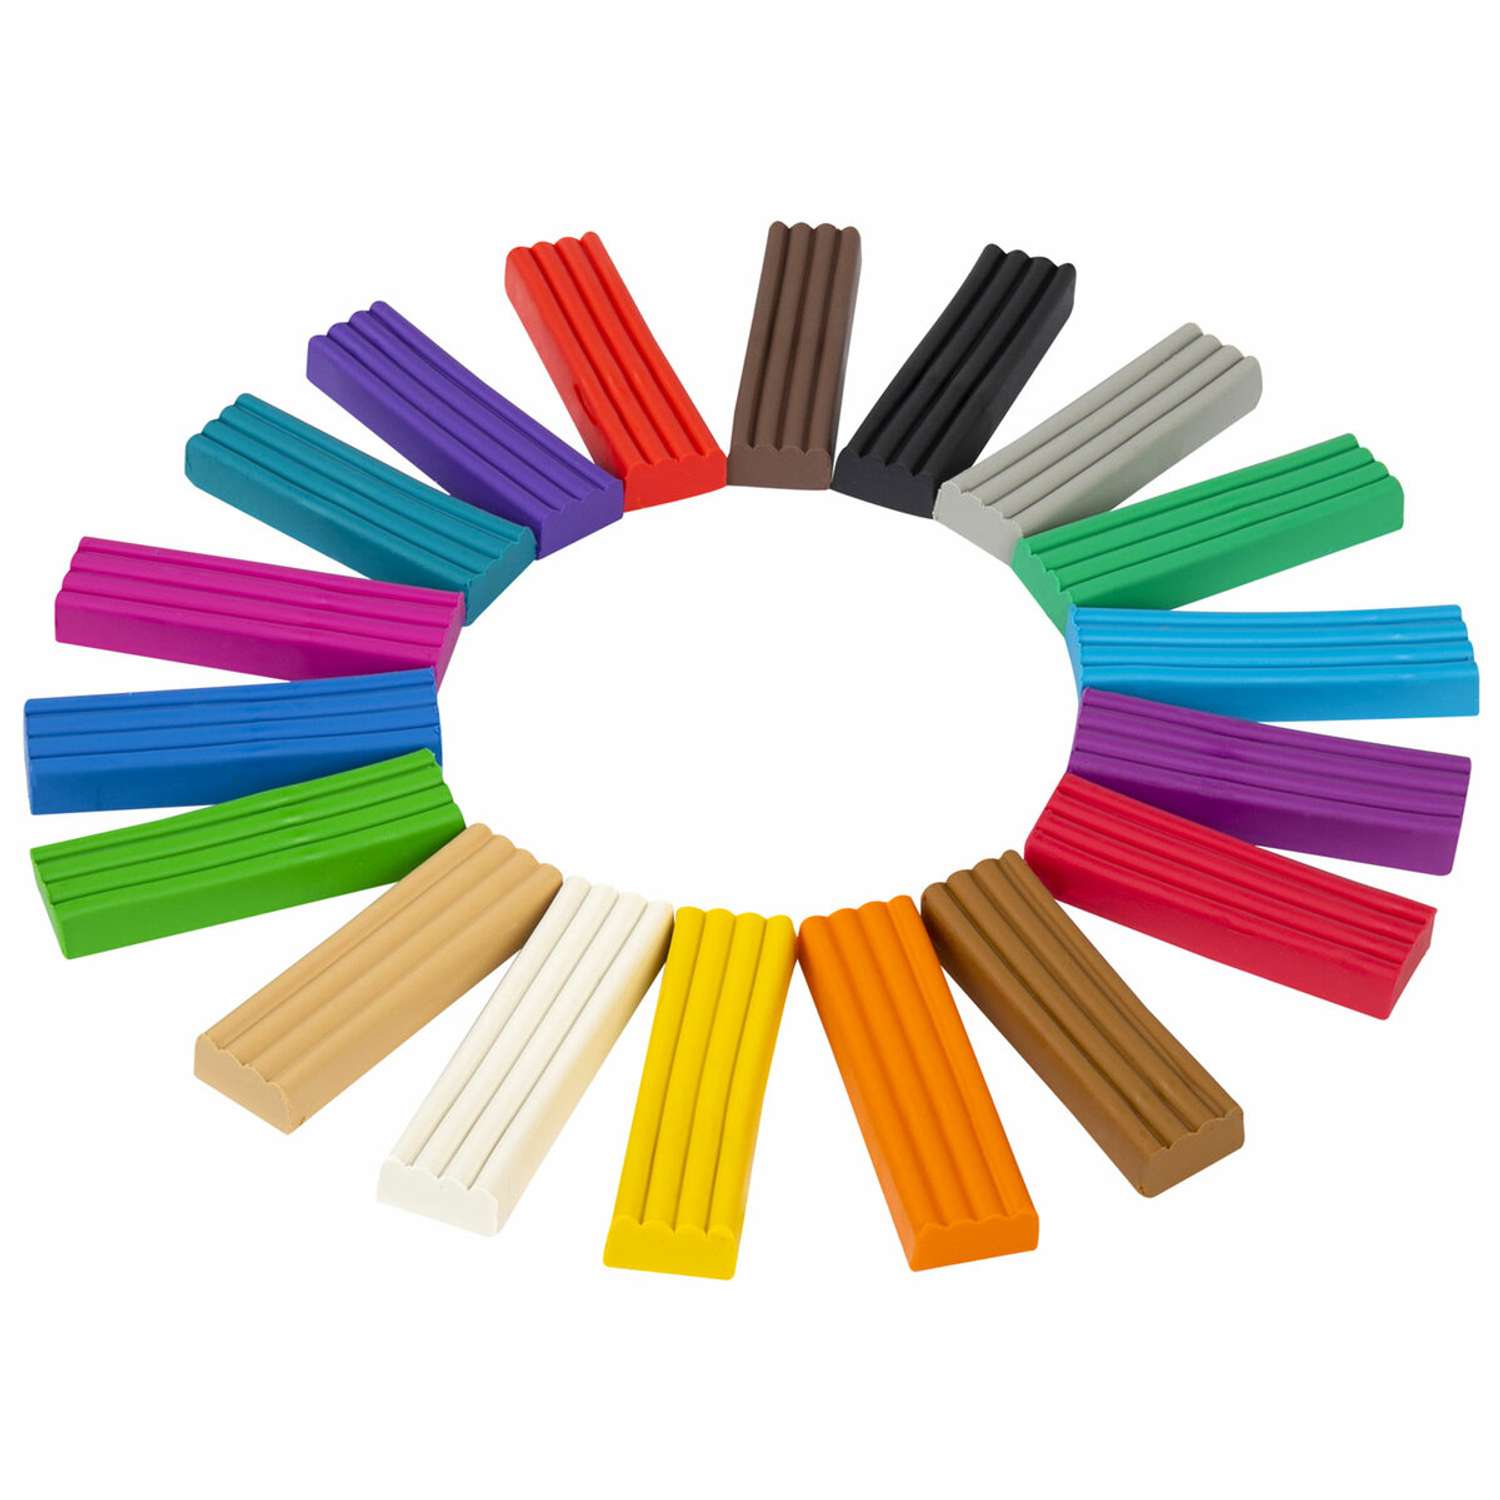 Пластилин классический Brauberg для лепки набор для детей 18 цветов - фото 3